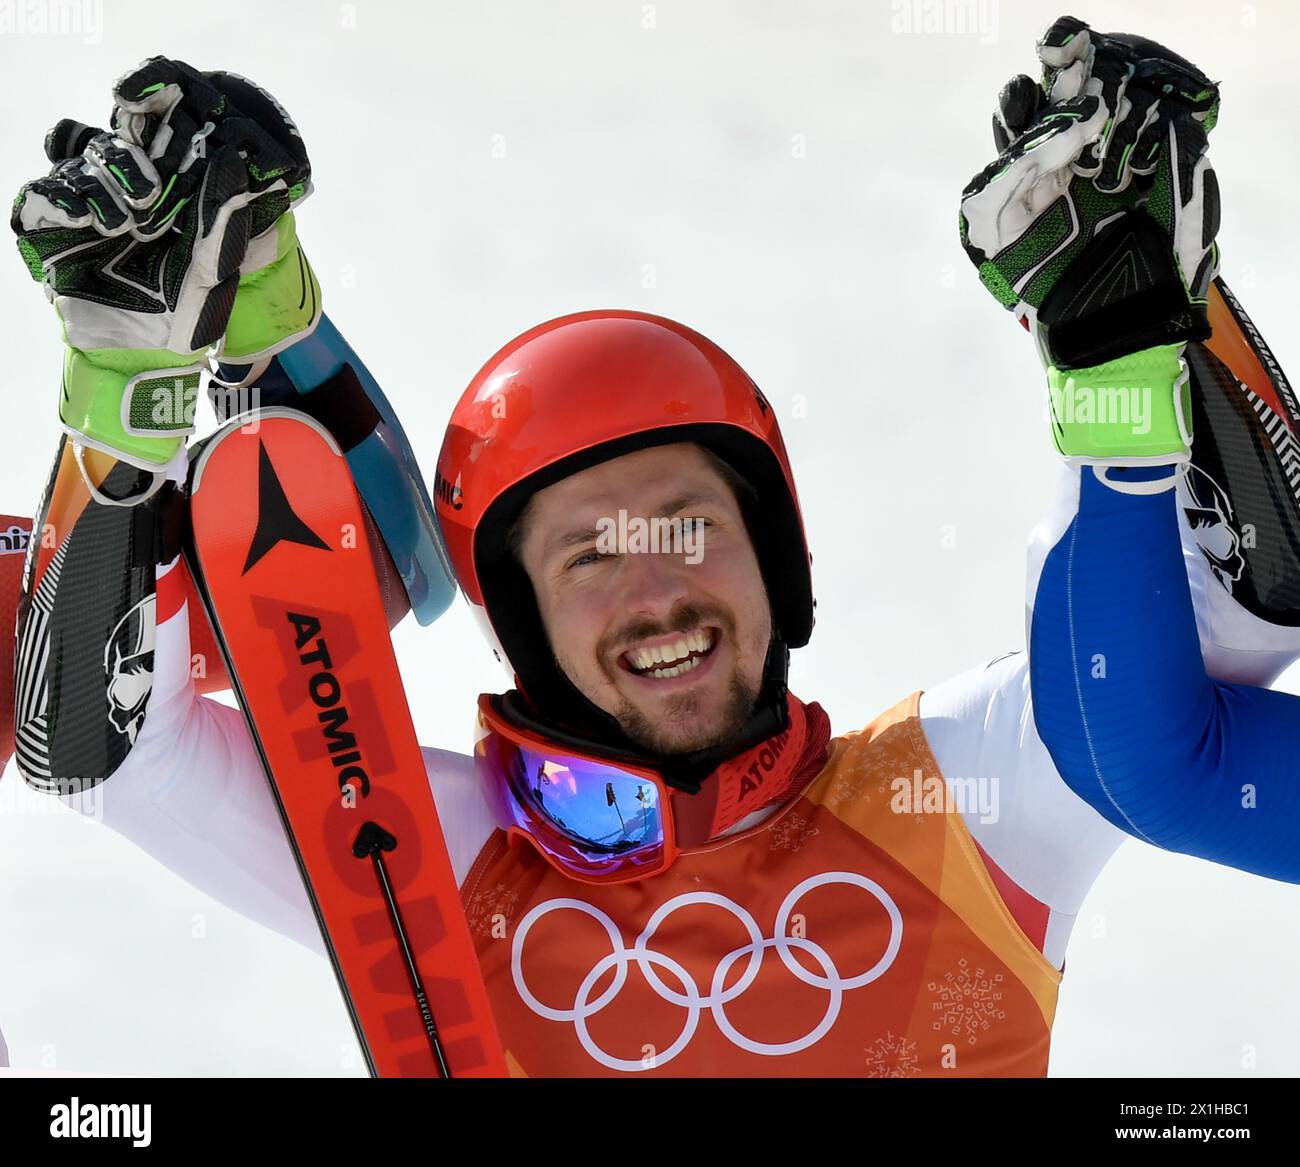 Le médaillé d'or autrichien Marcel Hirscher pose sur le podium lors de la cérémonie du slalom géant masculin de ski alpin sur la place des médailles de Pyeongchang lors des Jeux Olympiques d'hiver de Pyeongchang 2018 à Pyeongchang le 18 février 2018. - 20180218 PD1776 - Rechteinfo : droits gérés (RM) Banque D'Images